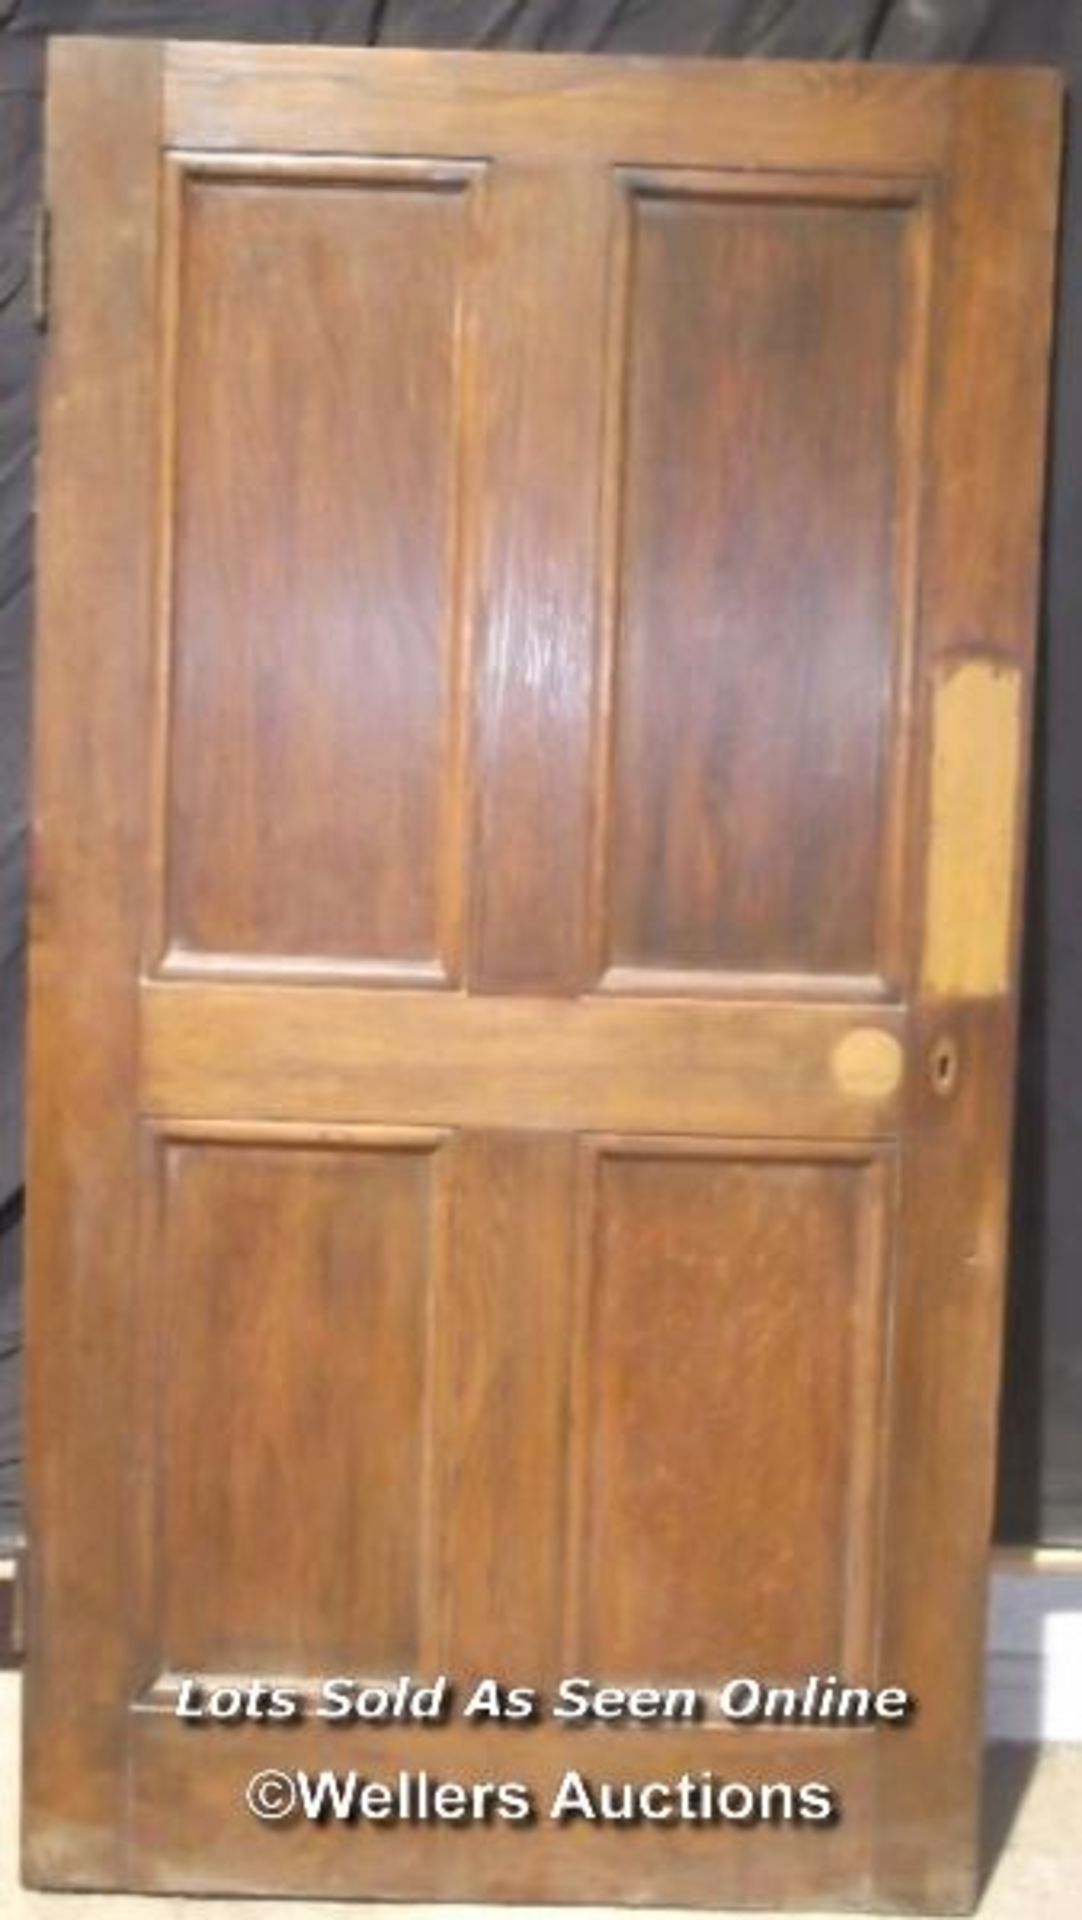 Victorian solid oak four panel door, 91cm x 173cm x 3cm